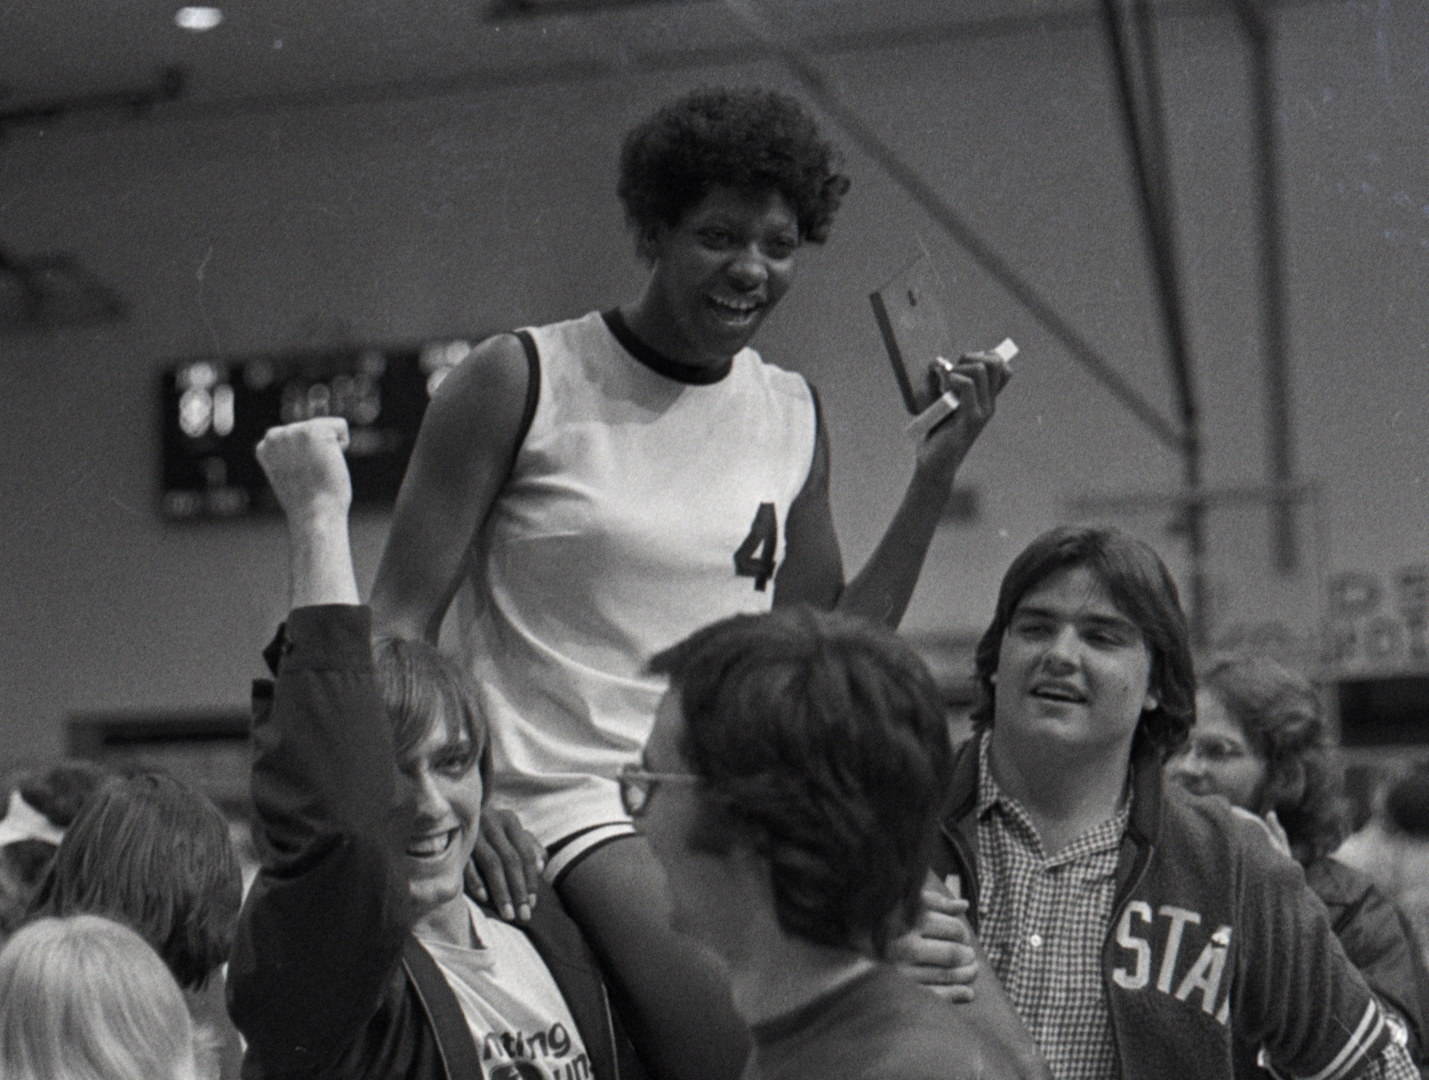 The Queen of Basketball | An Oscar-Winning Op-Doc